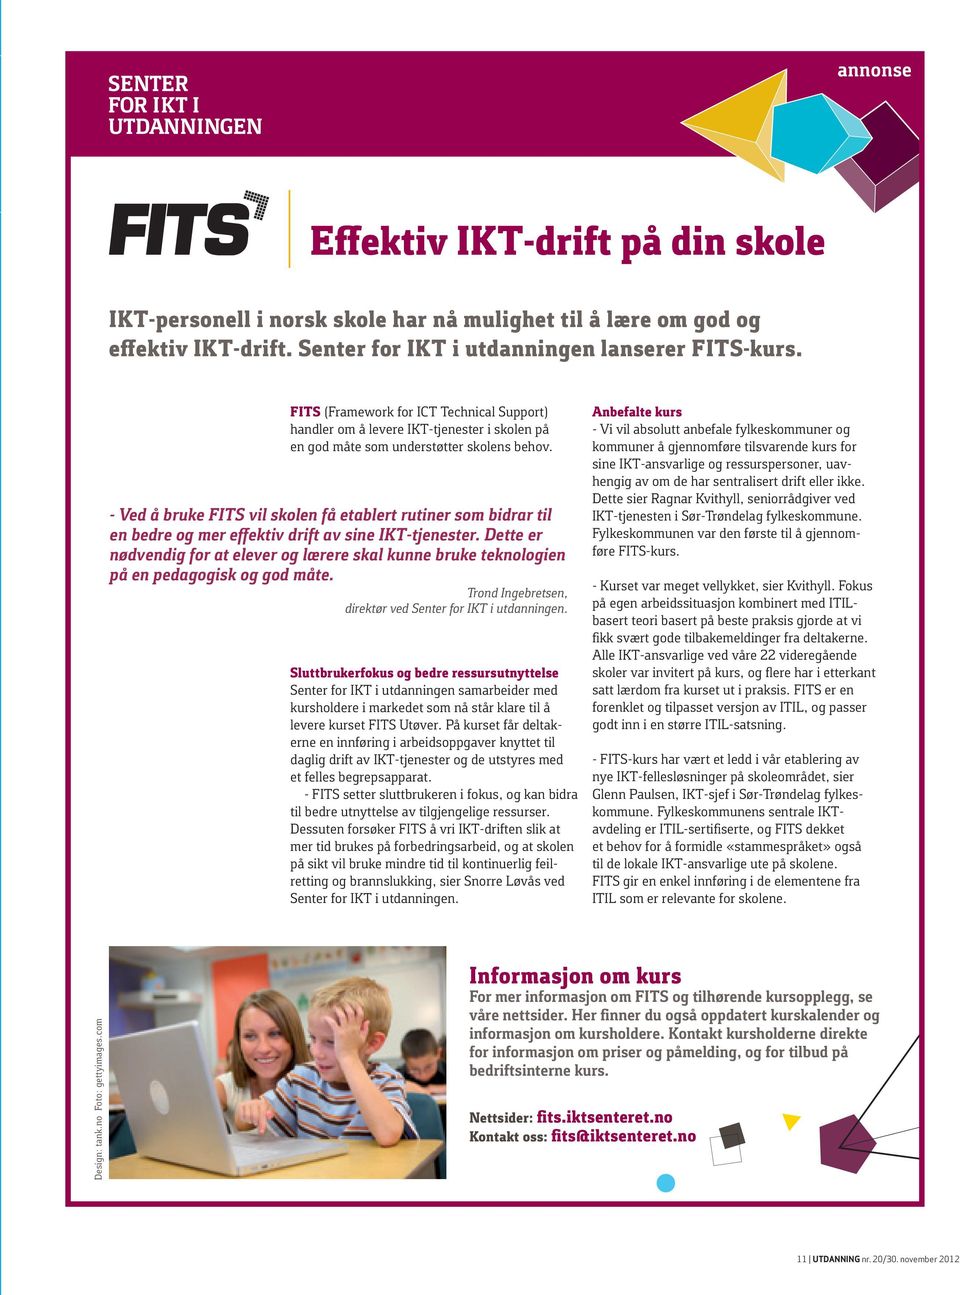 - Ved å bruke FITS vil skolen få etablert rutiner som bidrar til en bedre og mer effektiv drift av sine IKT-tjenester.